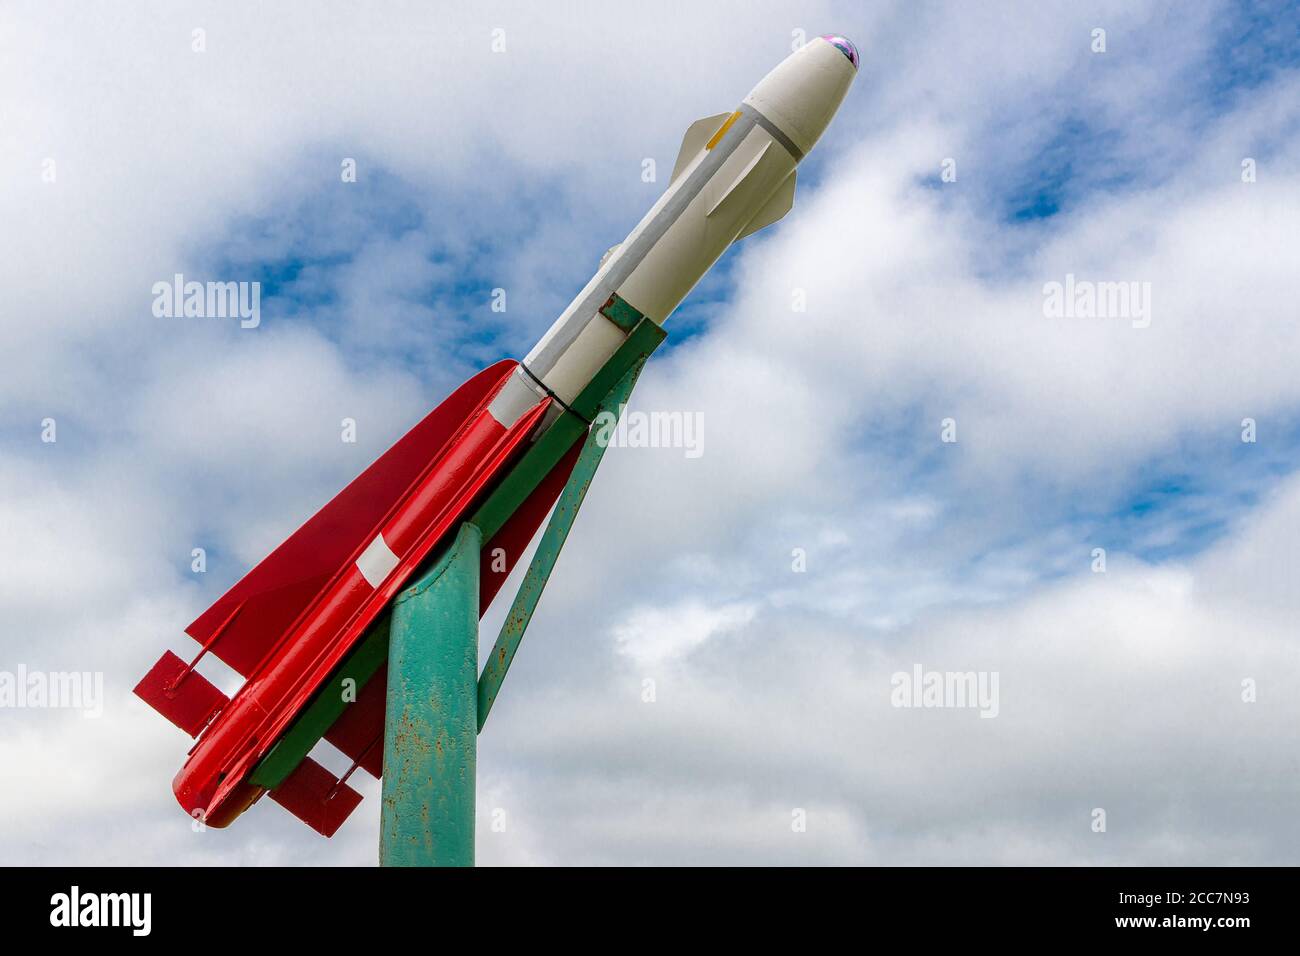 Eine kleine rote und weiße Rakete auf dem Display. Es ist auf einem Gier-Stand montiert und zeigt nach oben. Wolkiger Himmel vor dem Hintergrund mit einigen offenen Stellen. Stockfoto